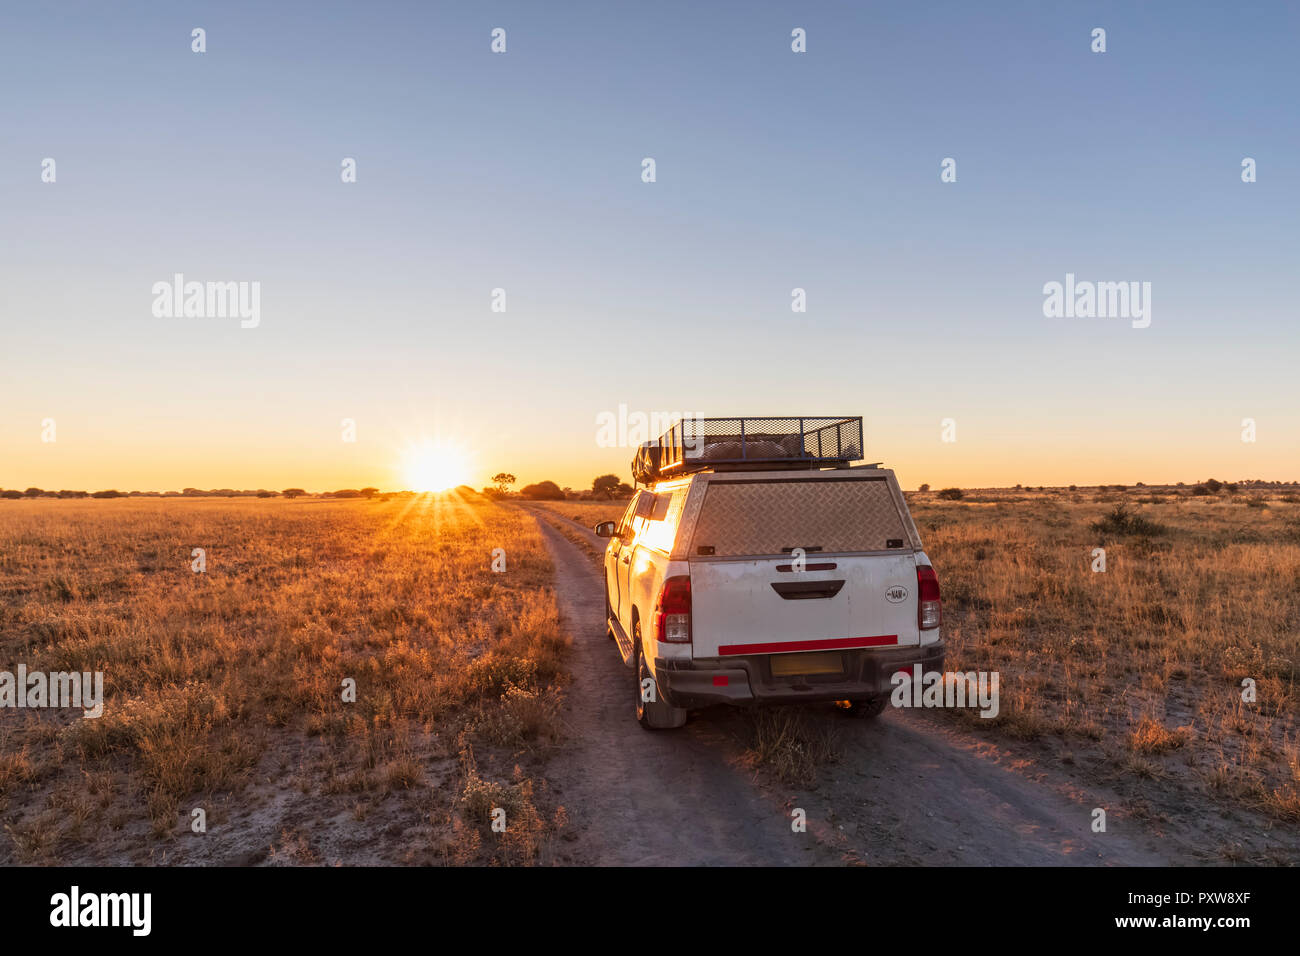 Le Botswana, Kalahari central Kalahari Game Reserve, véhicule hors route sur route de gravier au lever du soleil Banque D'Images